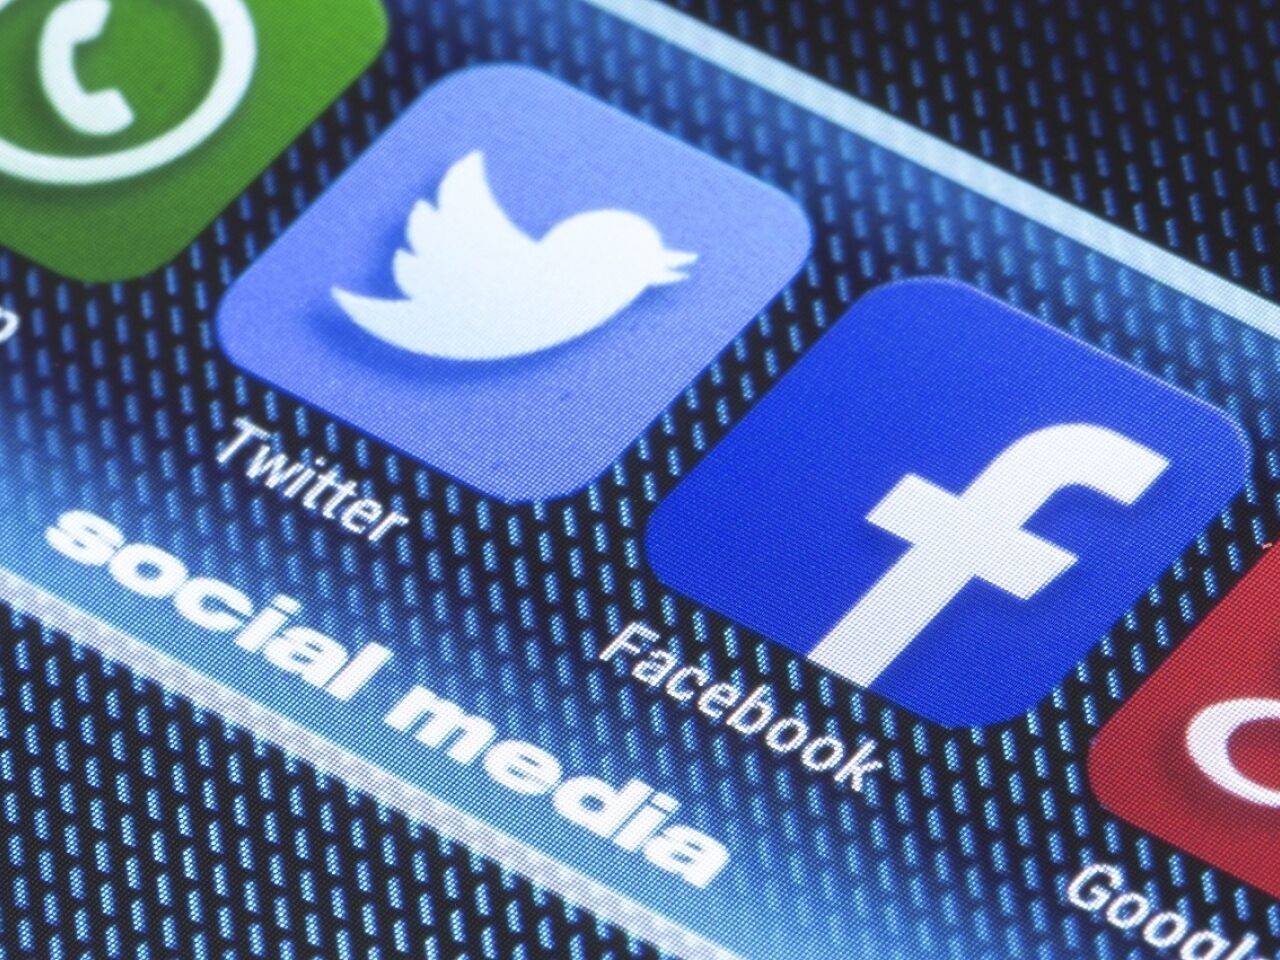 توئیتر و فیسبوک، چین را به انتشار اطلاعات نادرست متهم کردند